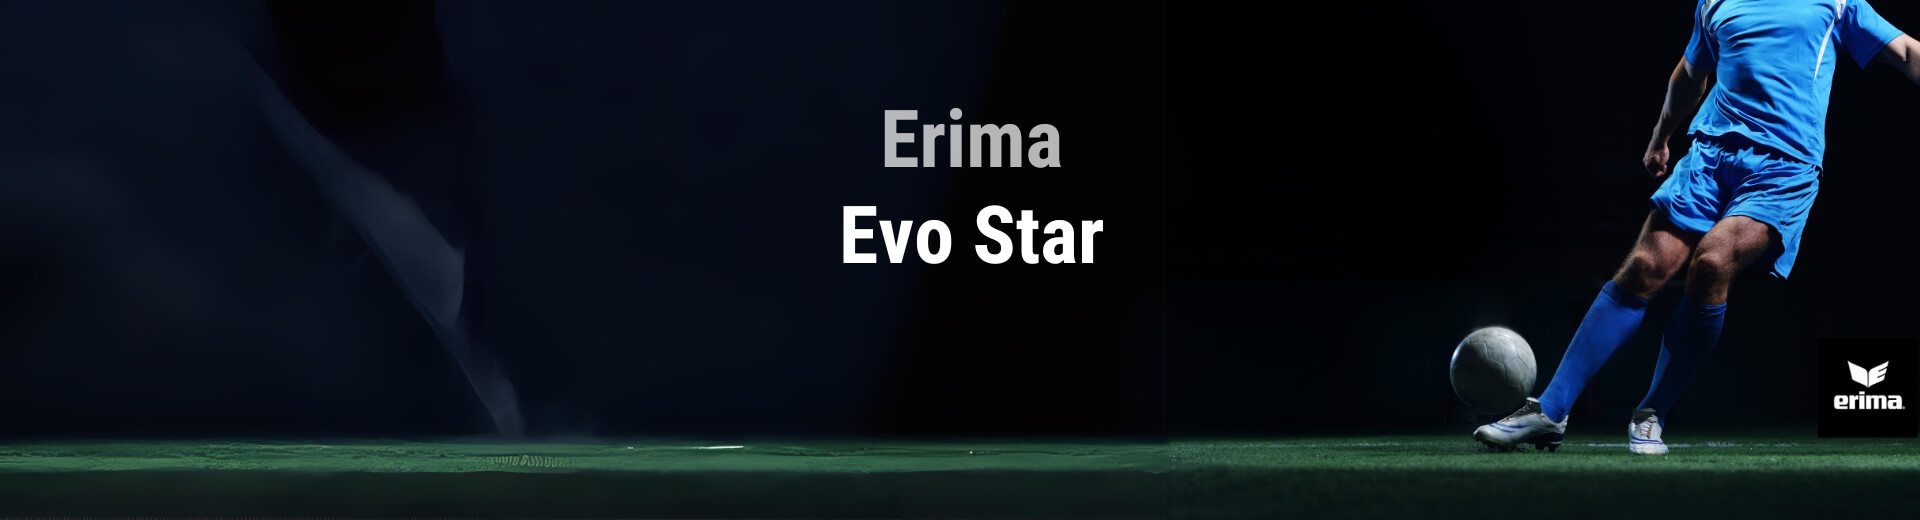 Erima Evo Star